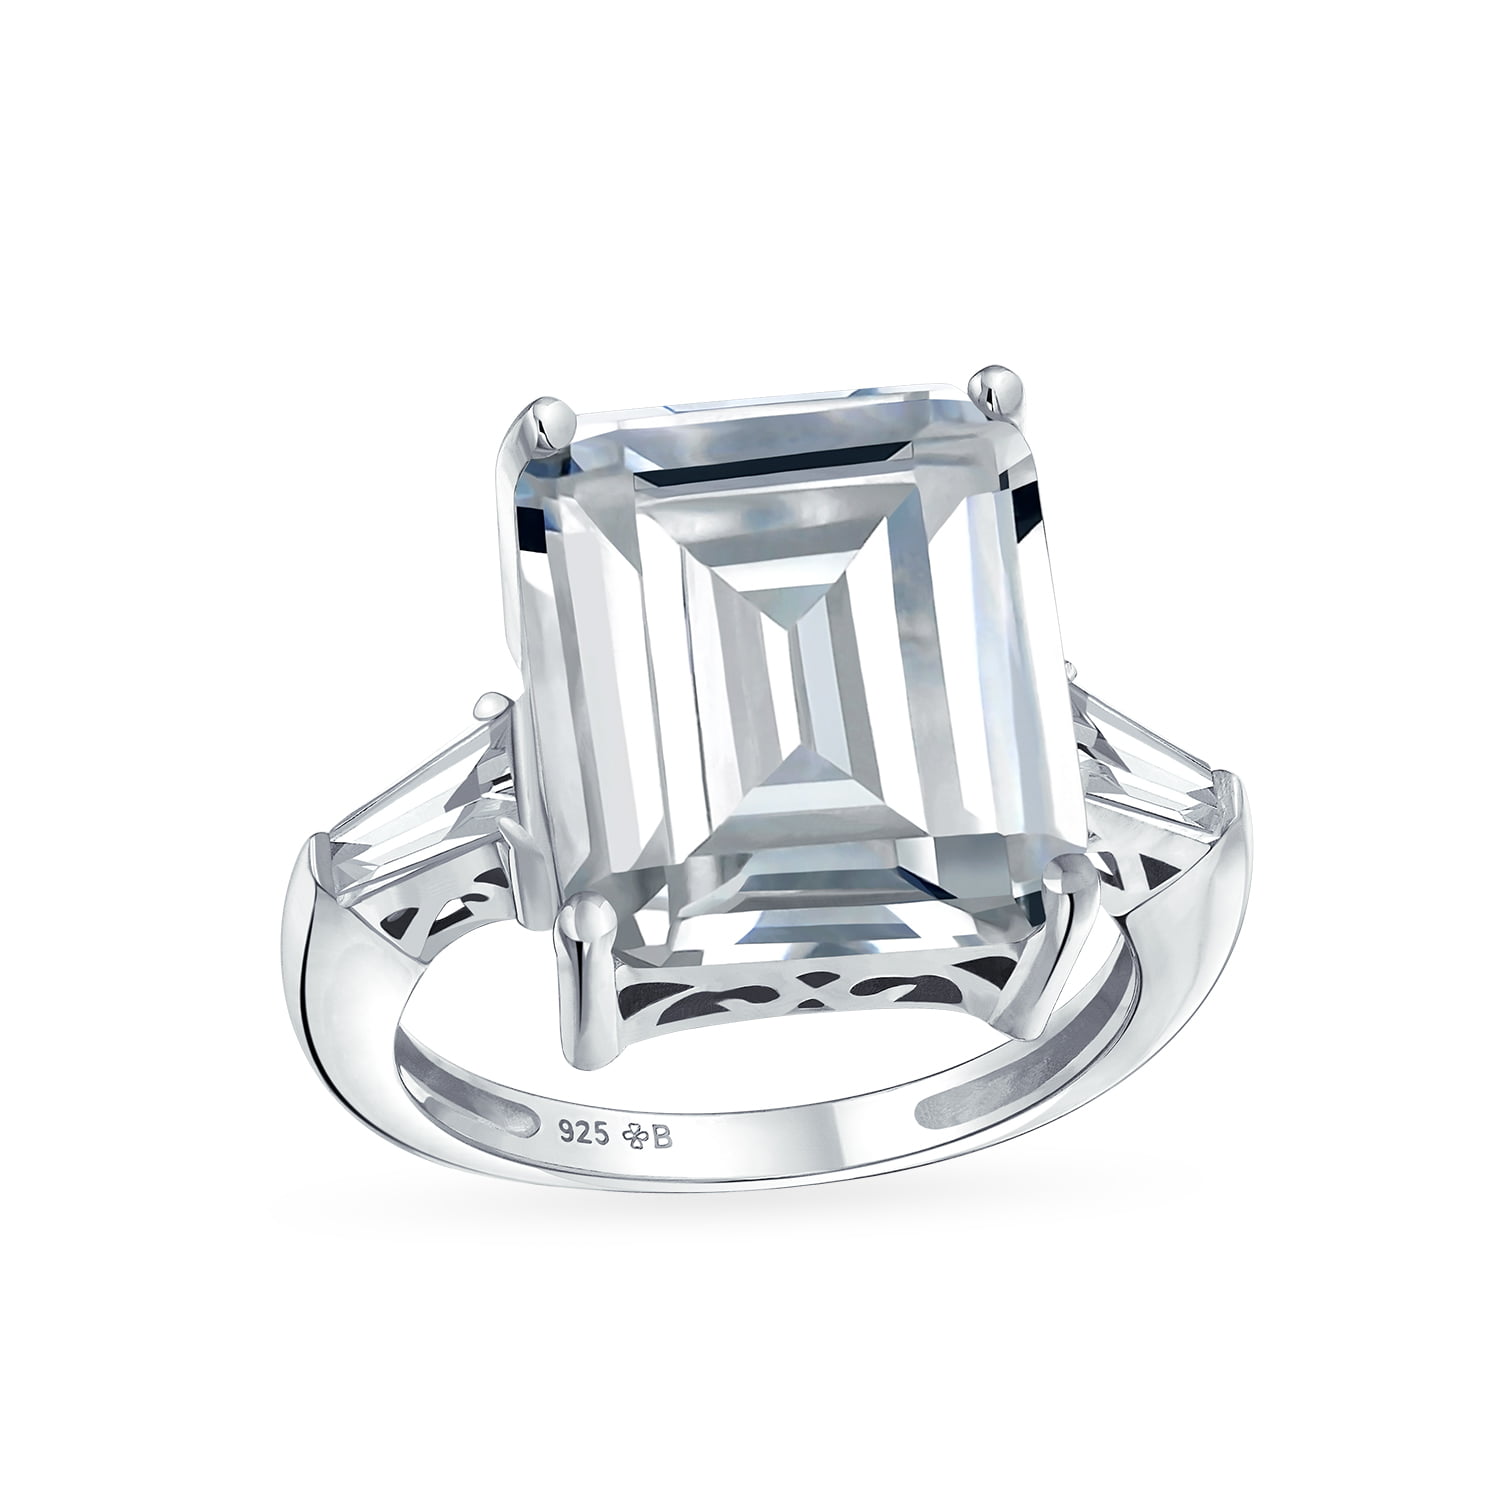 4 TCW Round Cut Solitaire Emerald Baguette CZ Bridal Engagement Ring Set 5-10 